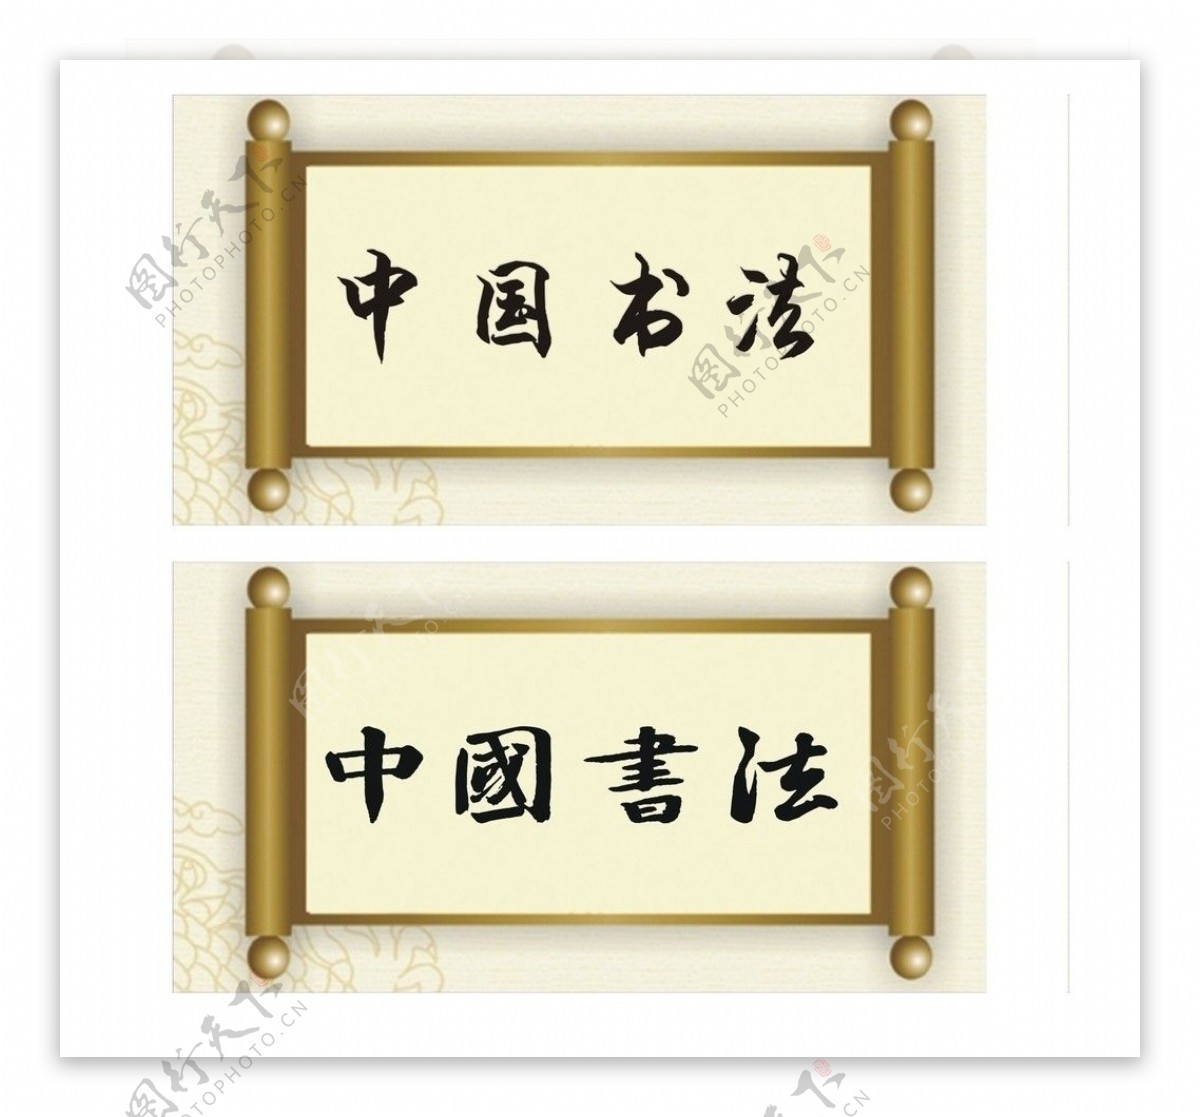 中国书法古卷纸图片